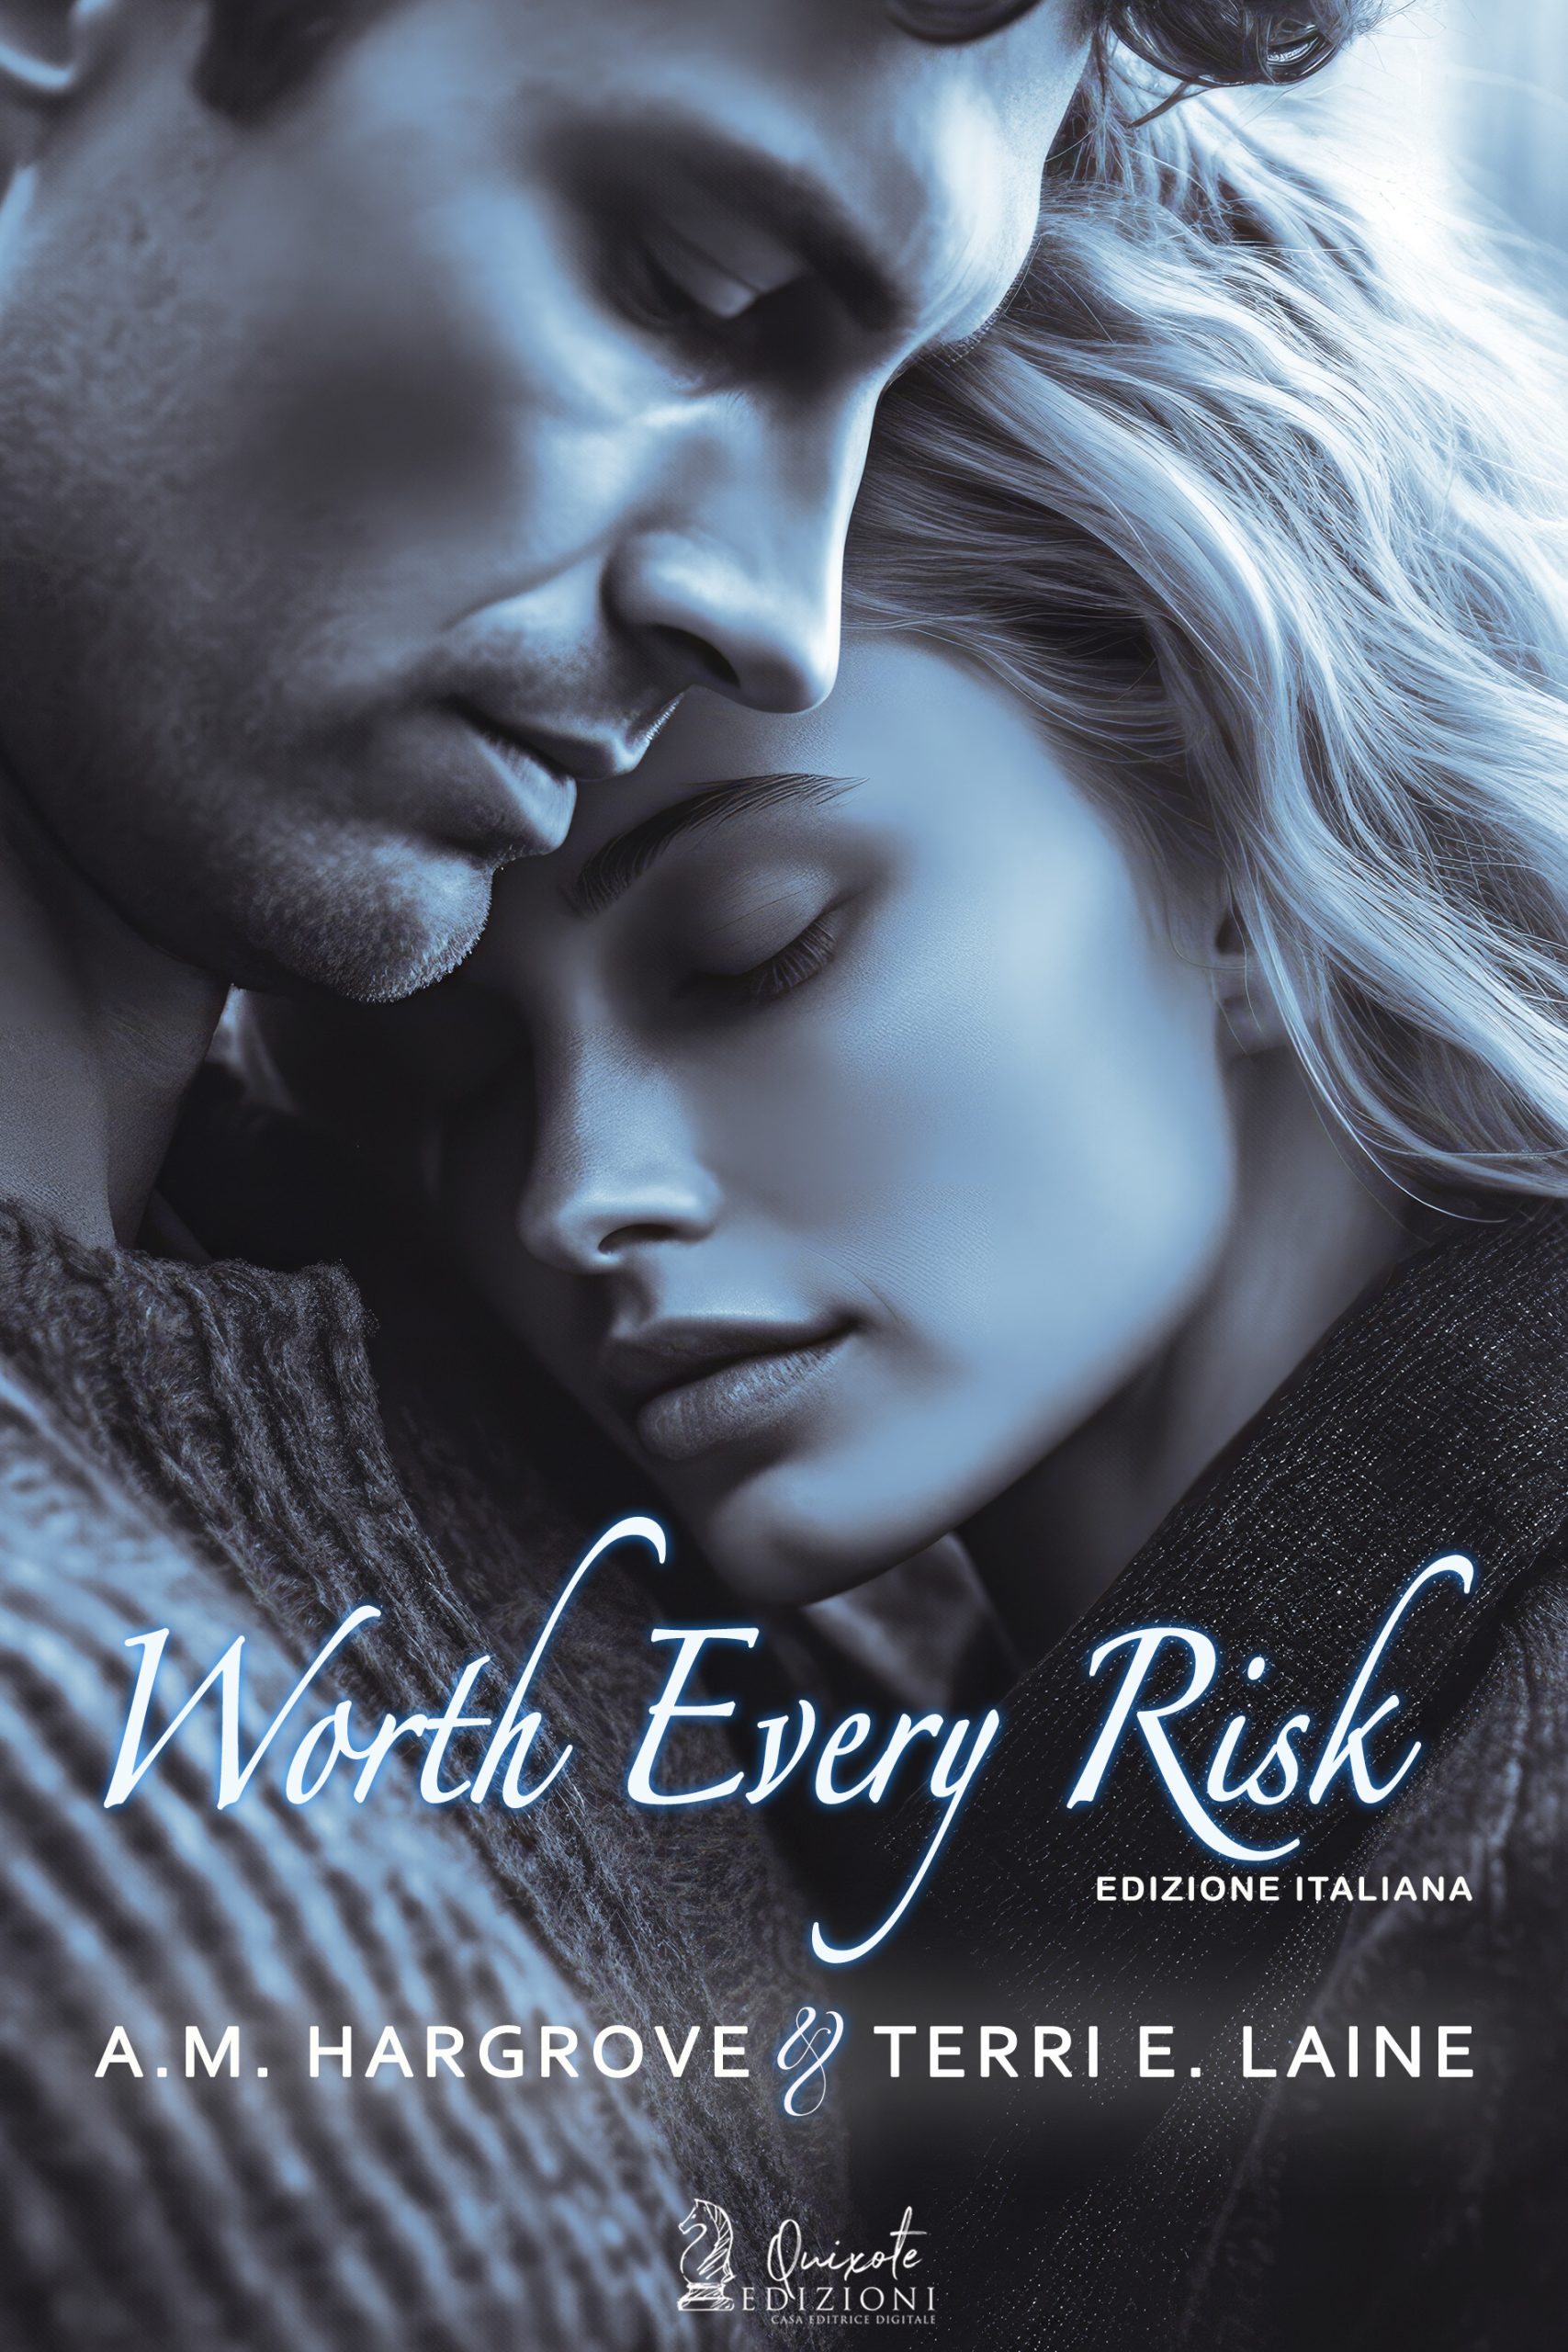 Segnalazione di uscita “Worth Every Risk” di A.M. Hargrove & Terri E. Laine